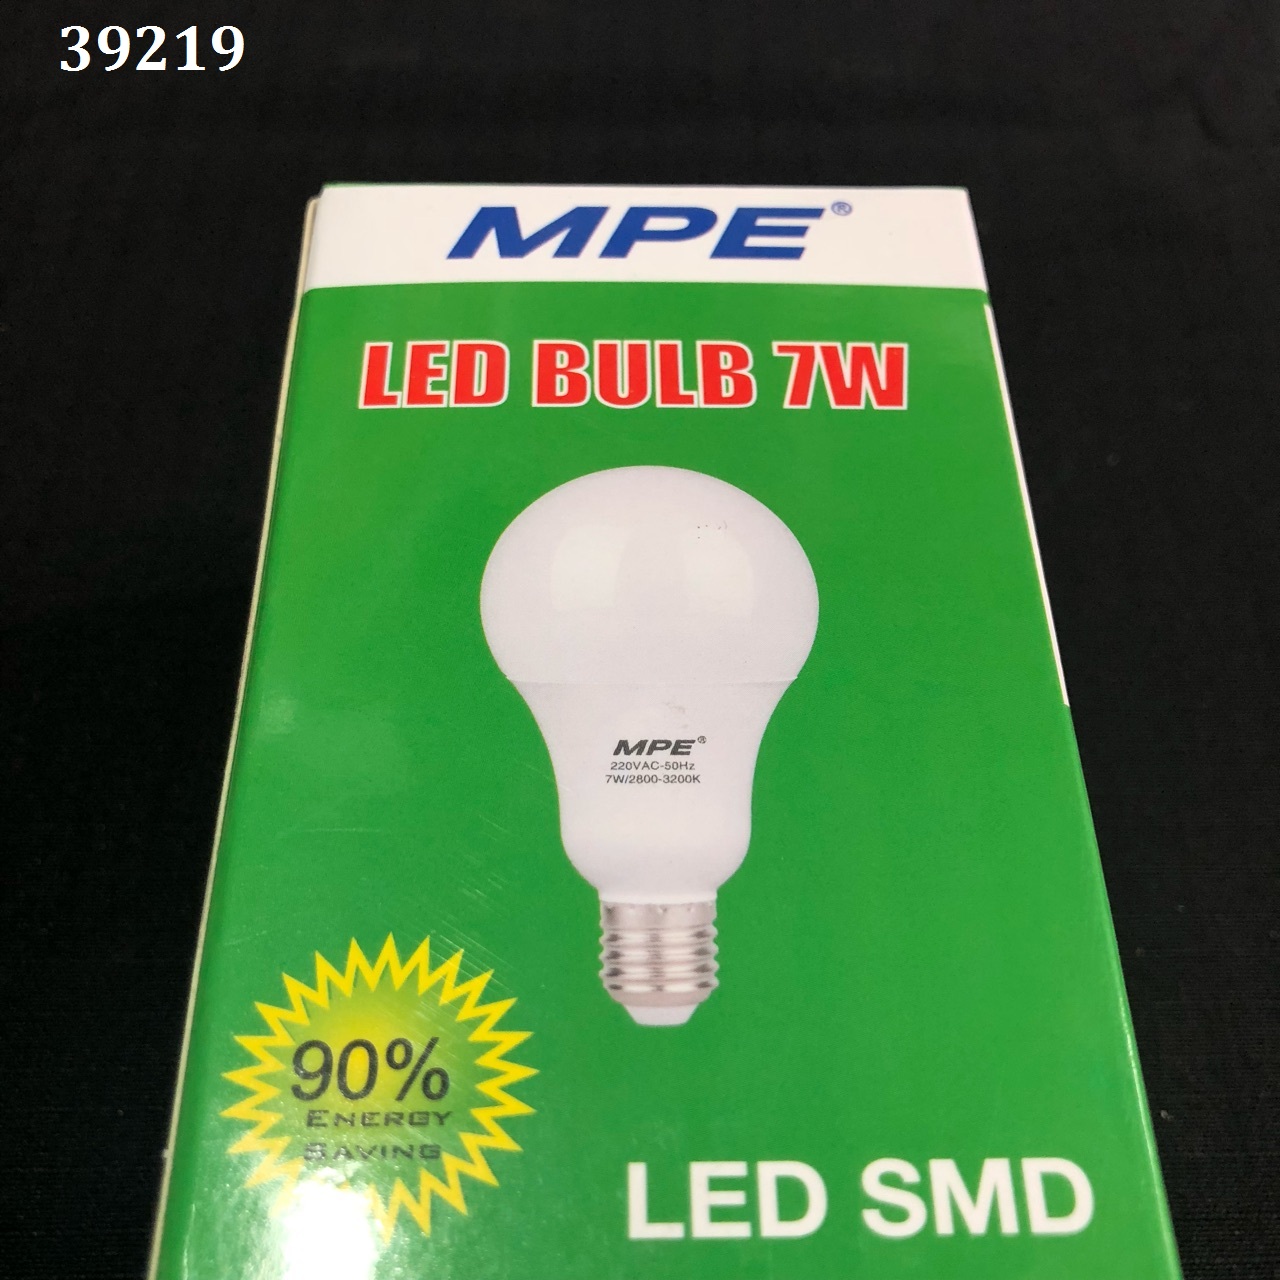 Đèn LED Bulb 3W a/s trắng MPE LBL-3T